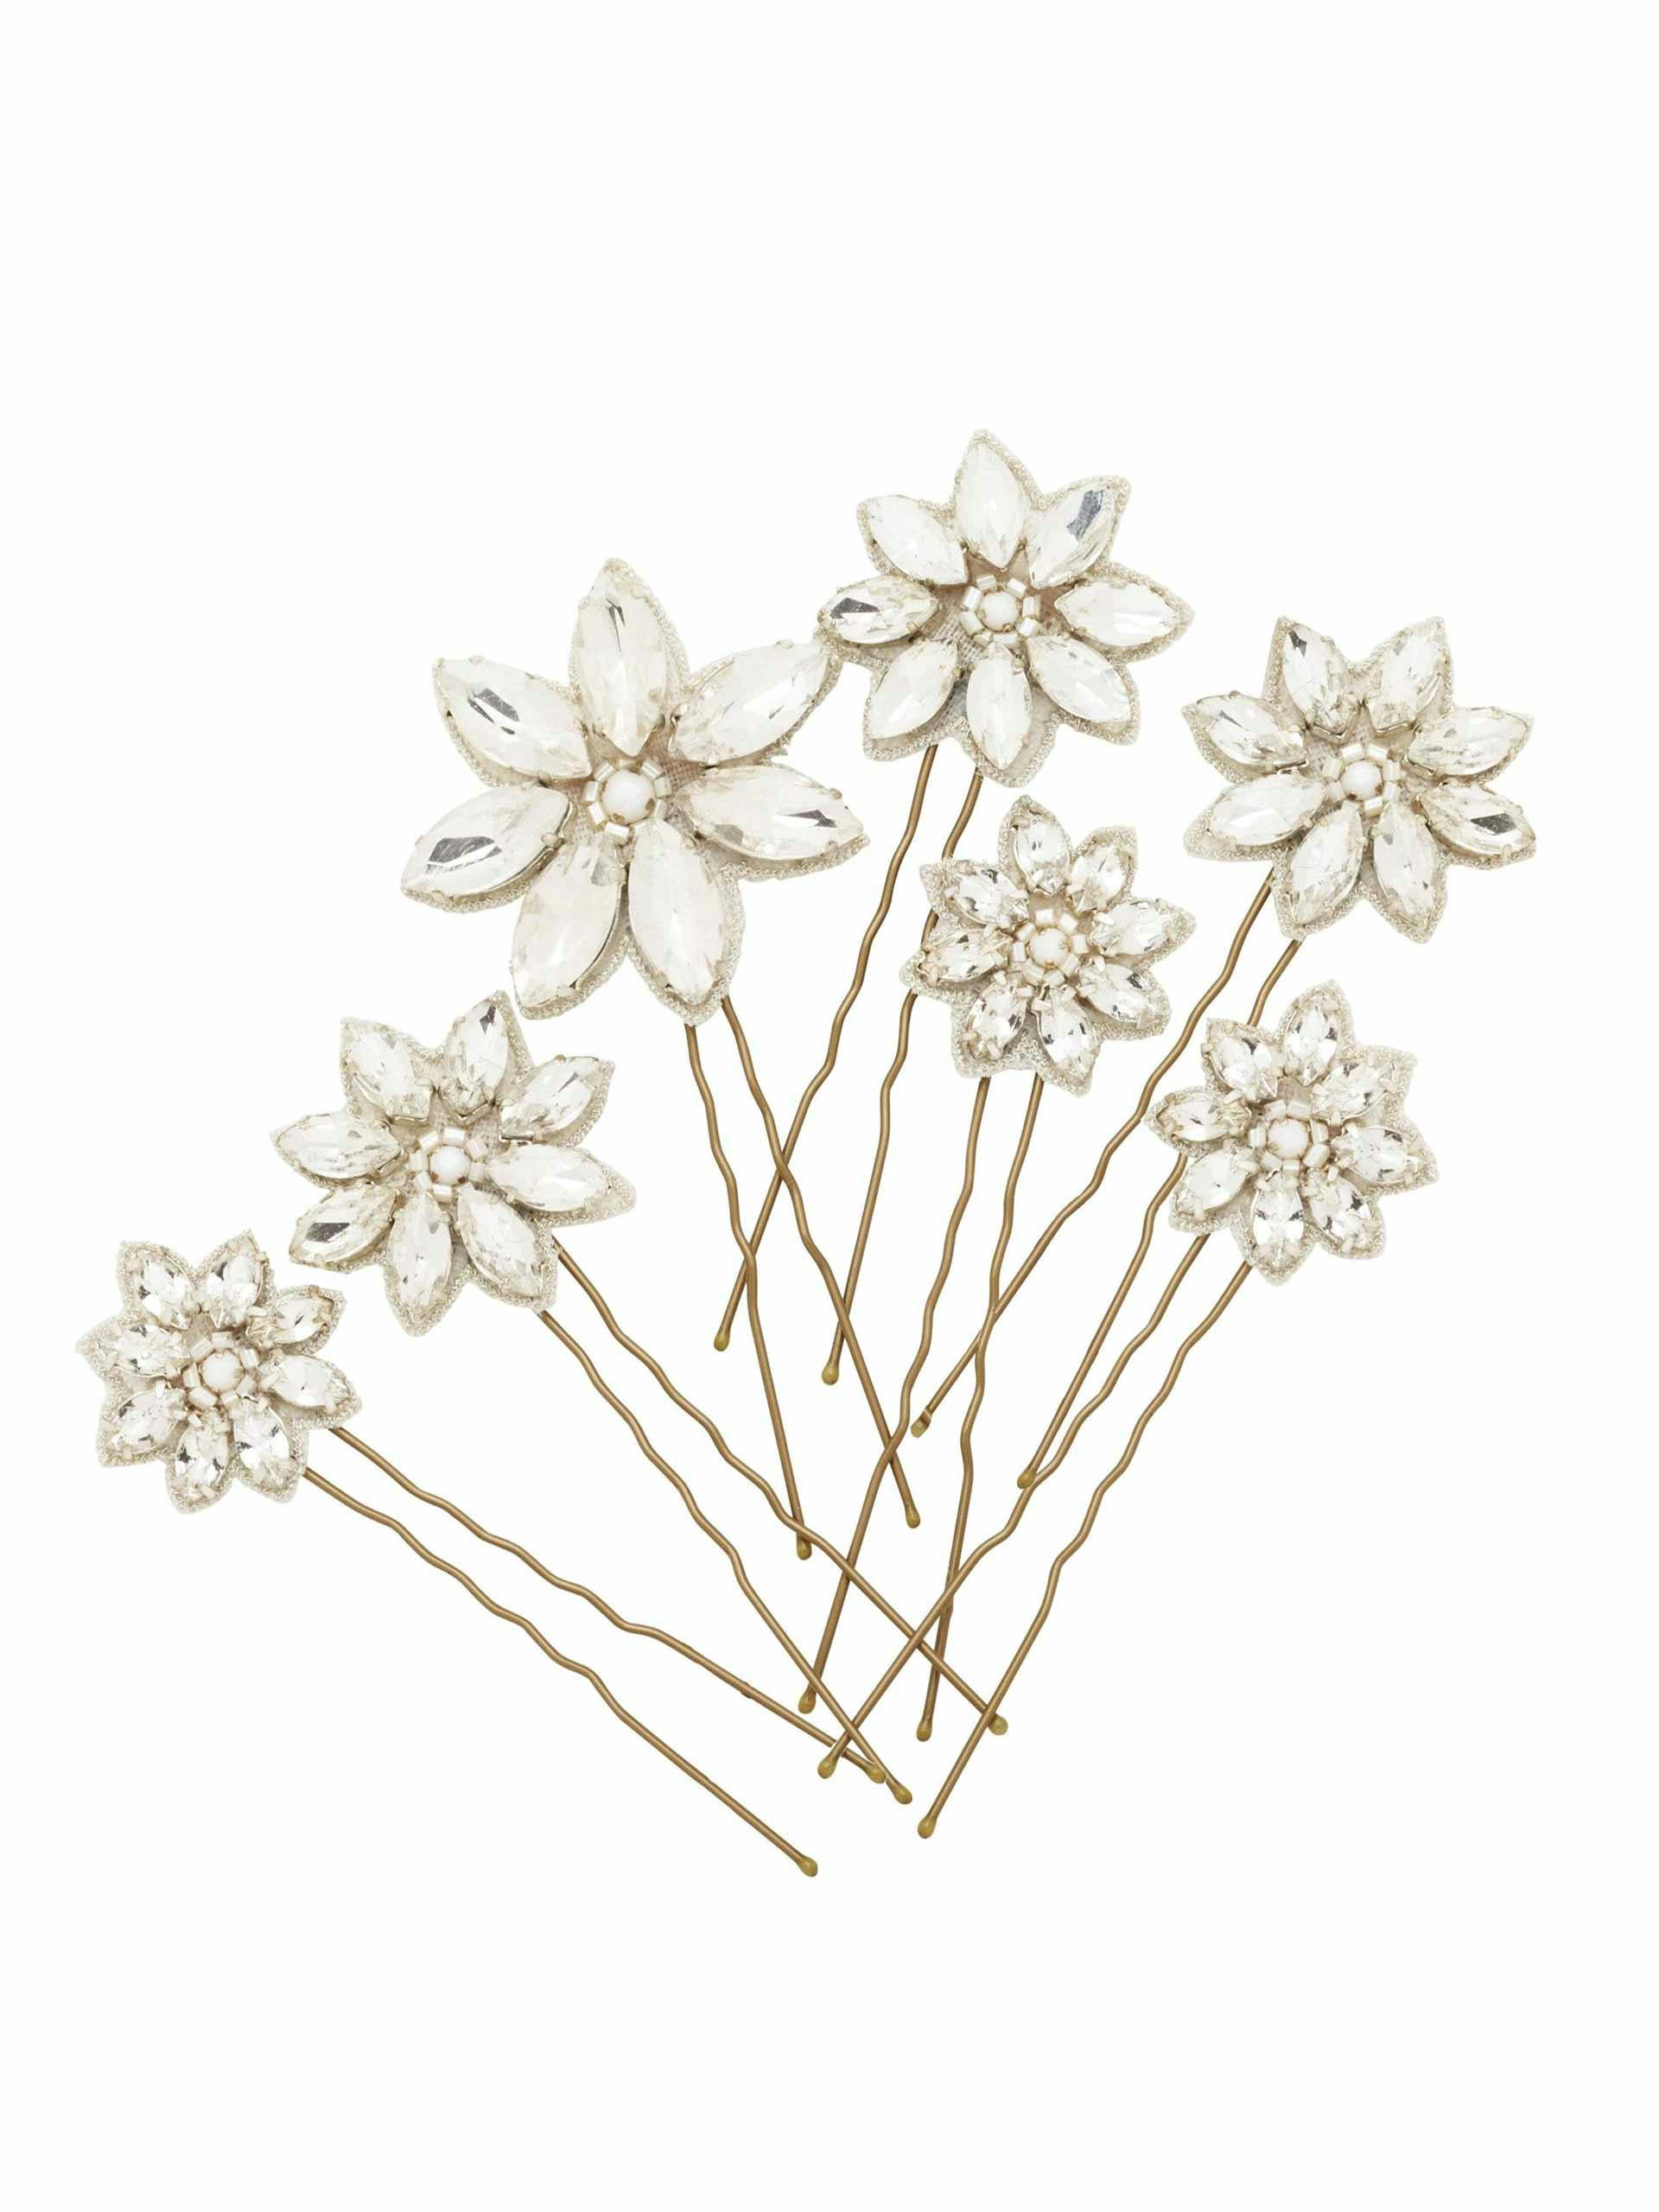 Crystal daisy hair pins (set of 5)